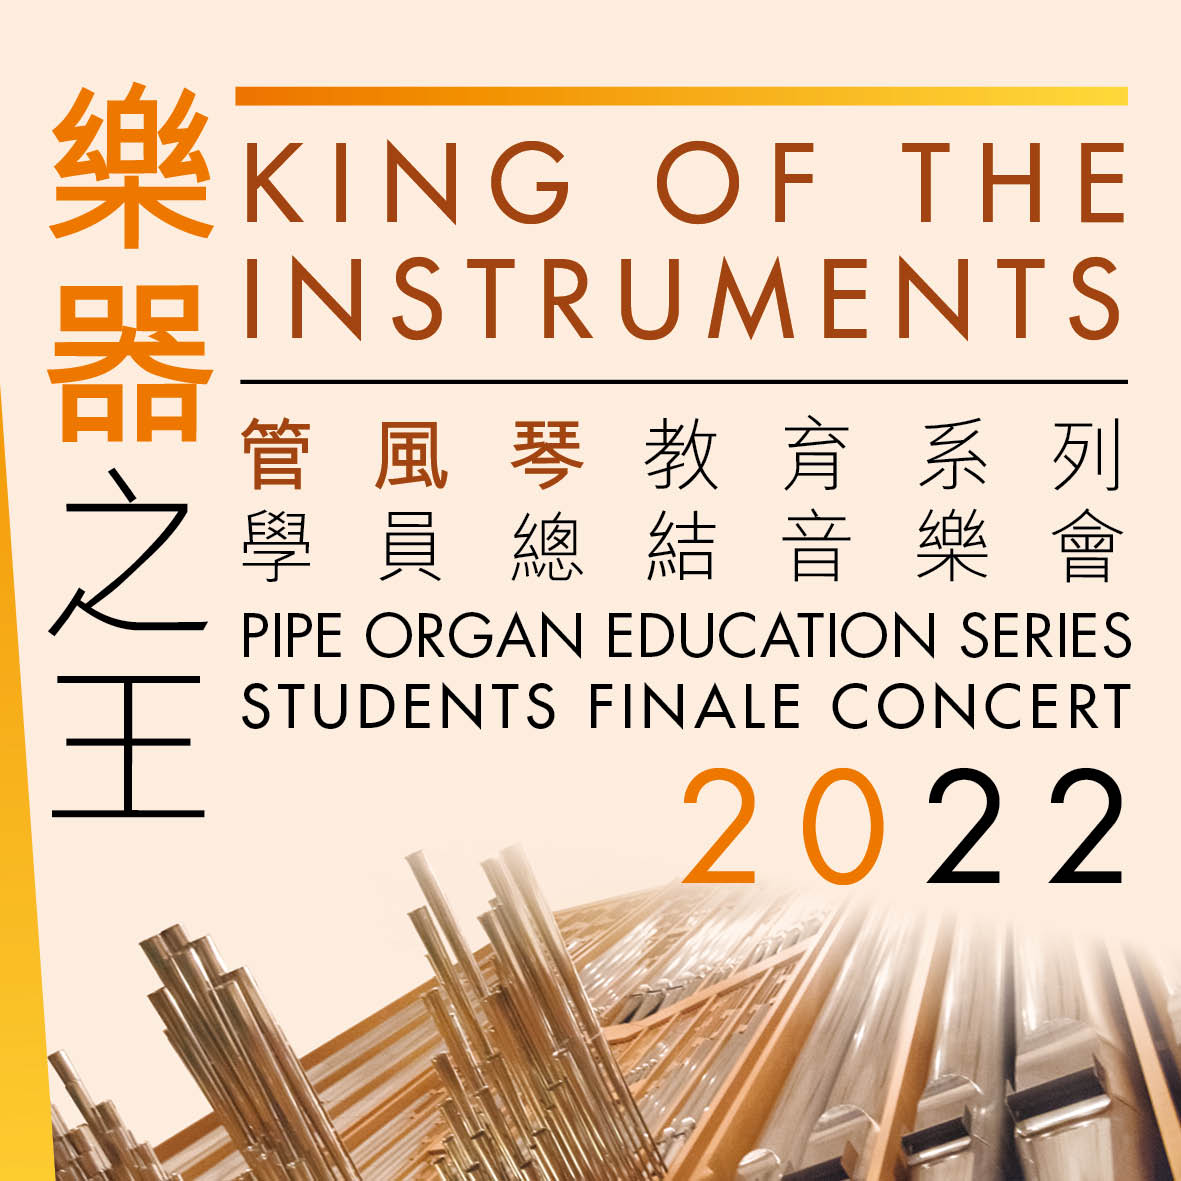 香港文化中心「乐器之王」管风琴教育系列2022学员总结音